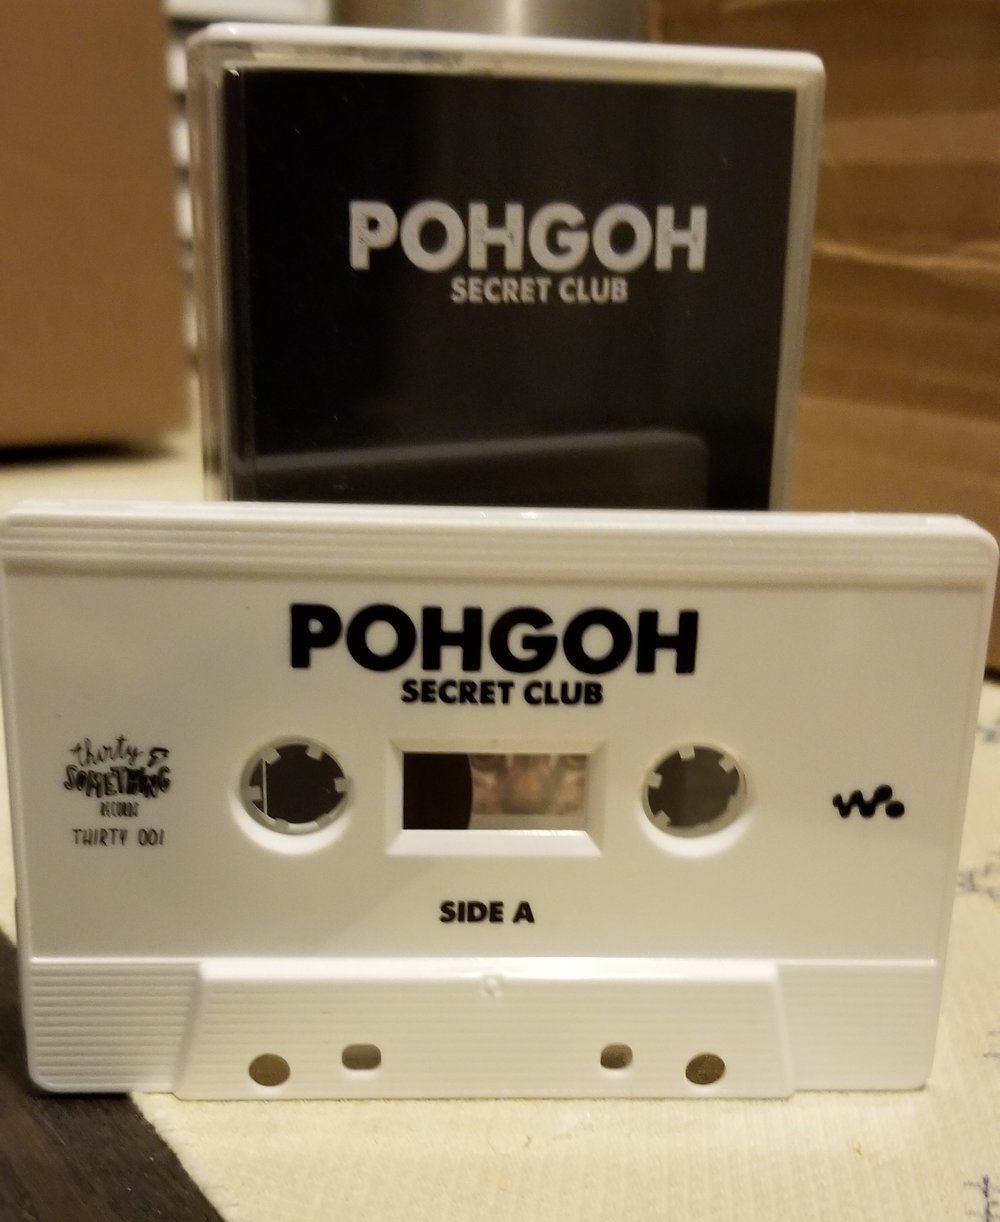 Pohgoh - Secret Club Cassette Tape